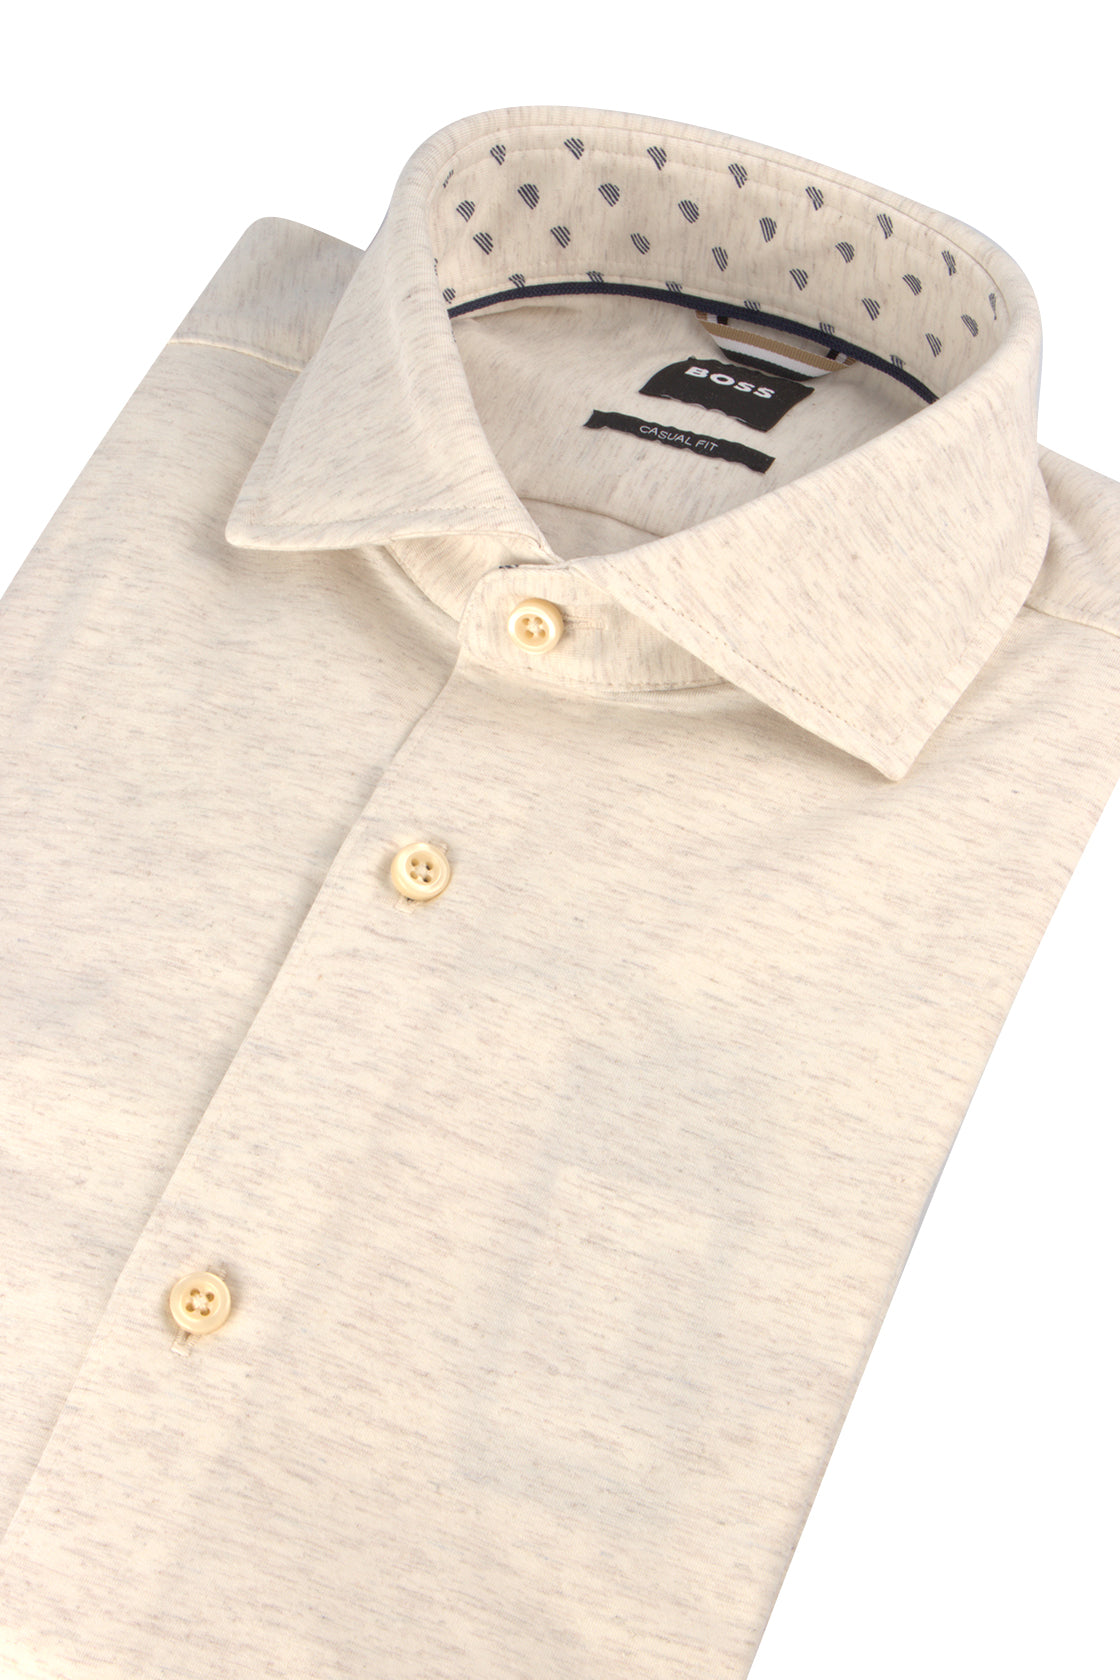 Hugo Boss C-Hal Spread Shirt Open White